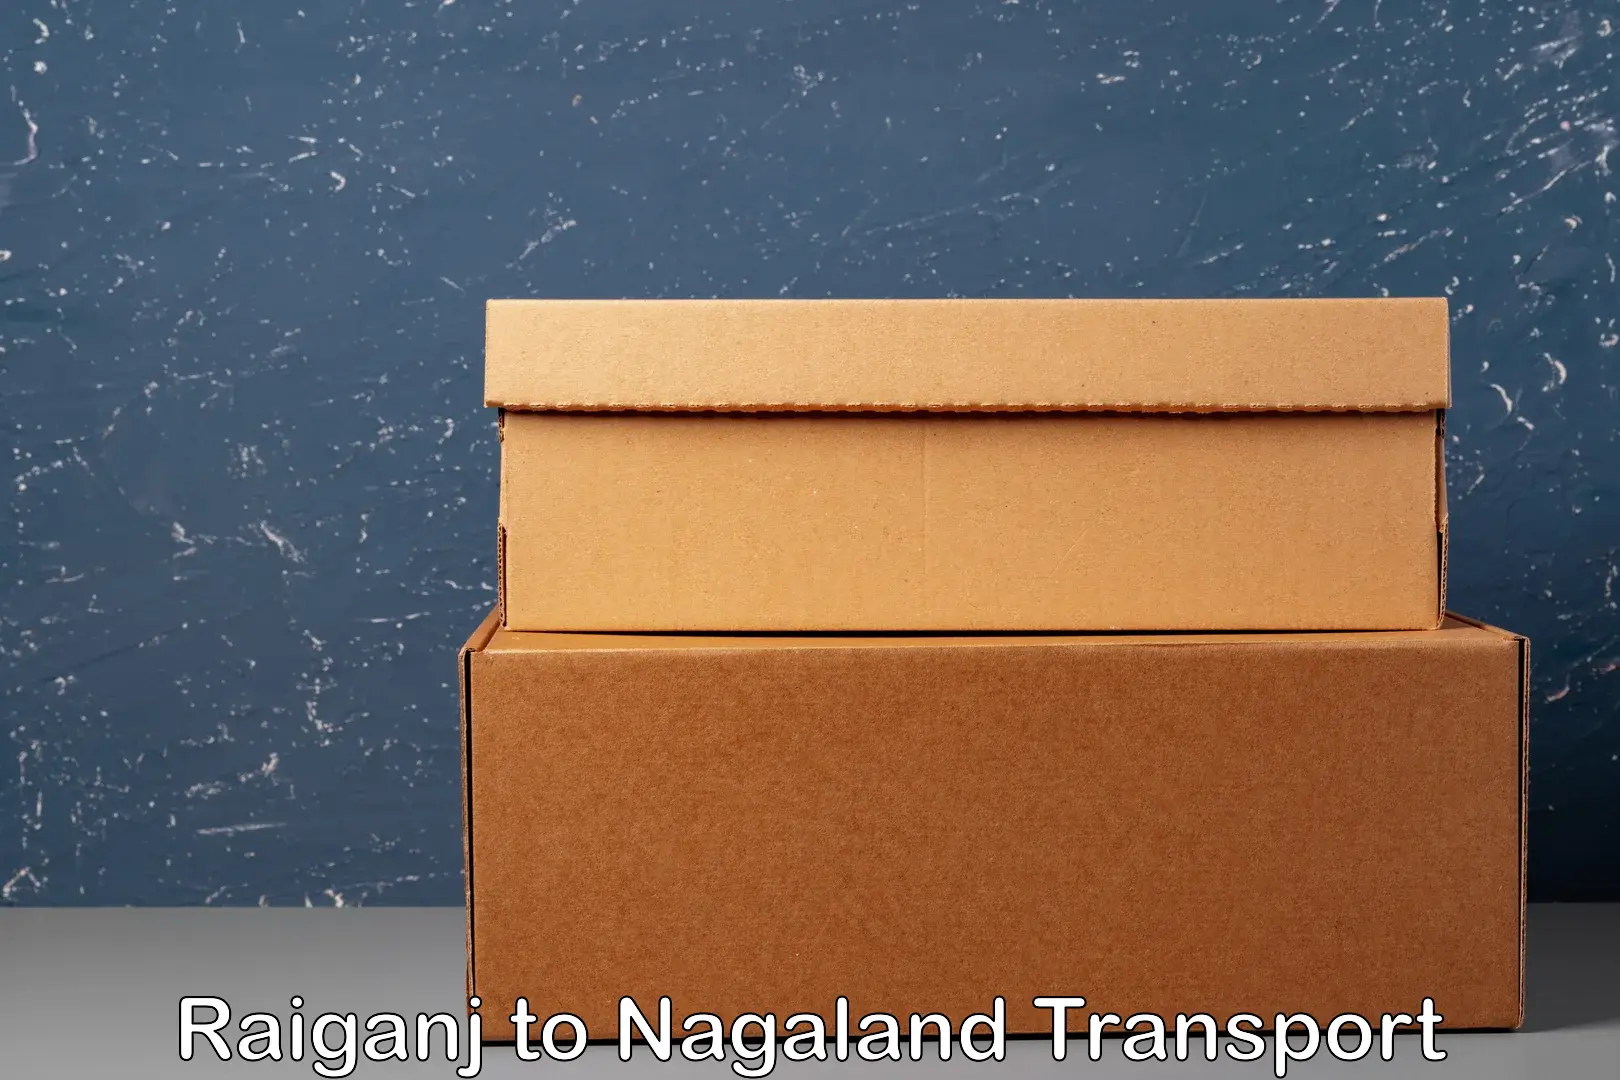 Furniture transport service Raiganj to Nagaland